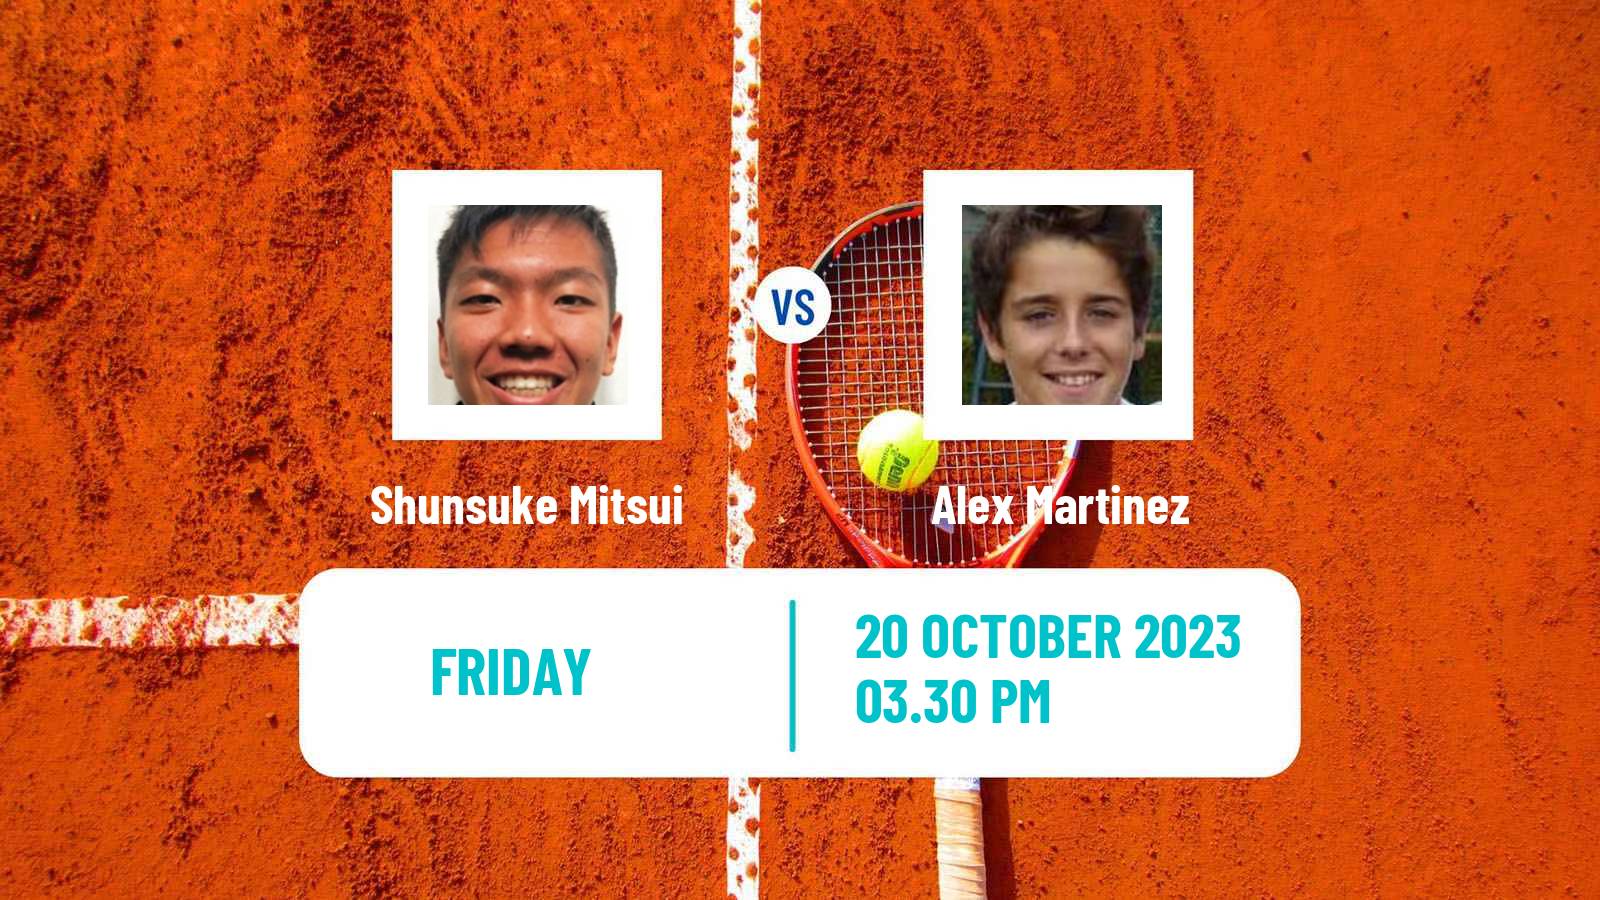 Tennis ITF M15 Las Vegas Nv Men Shunsuke Mitsui - Alex Martinez